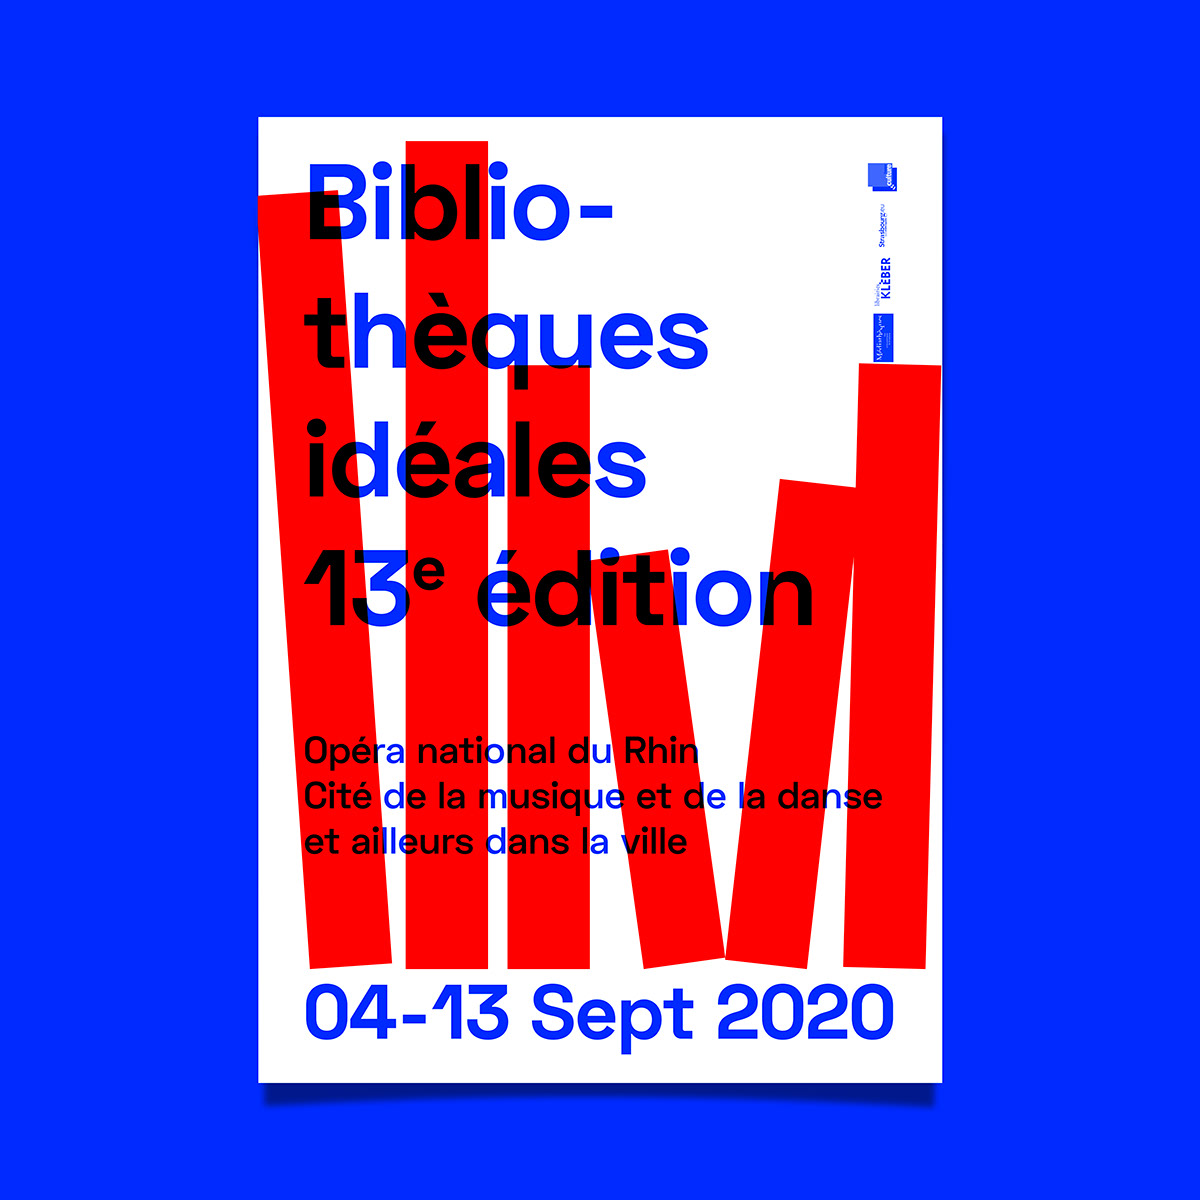 graphisme Culturel sérigraphie rouge bleu Typographie livre bibliothèques Ideales affiche